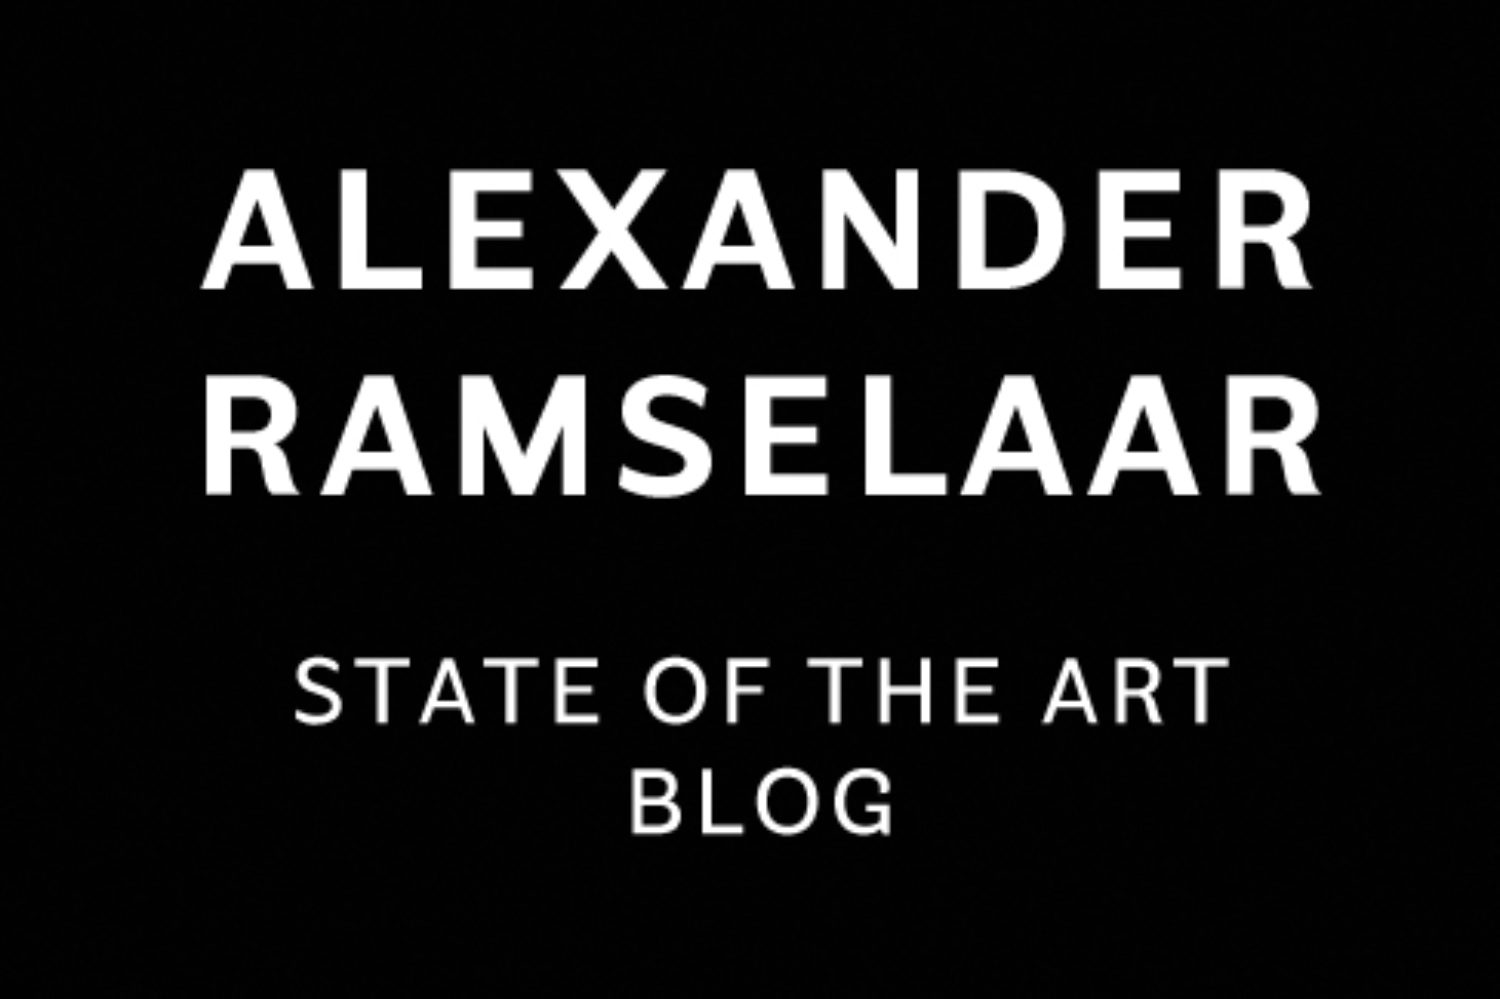 State of the Art blog: Alexander Ramselaar